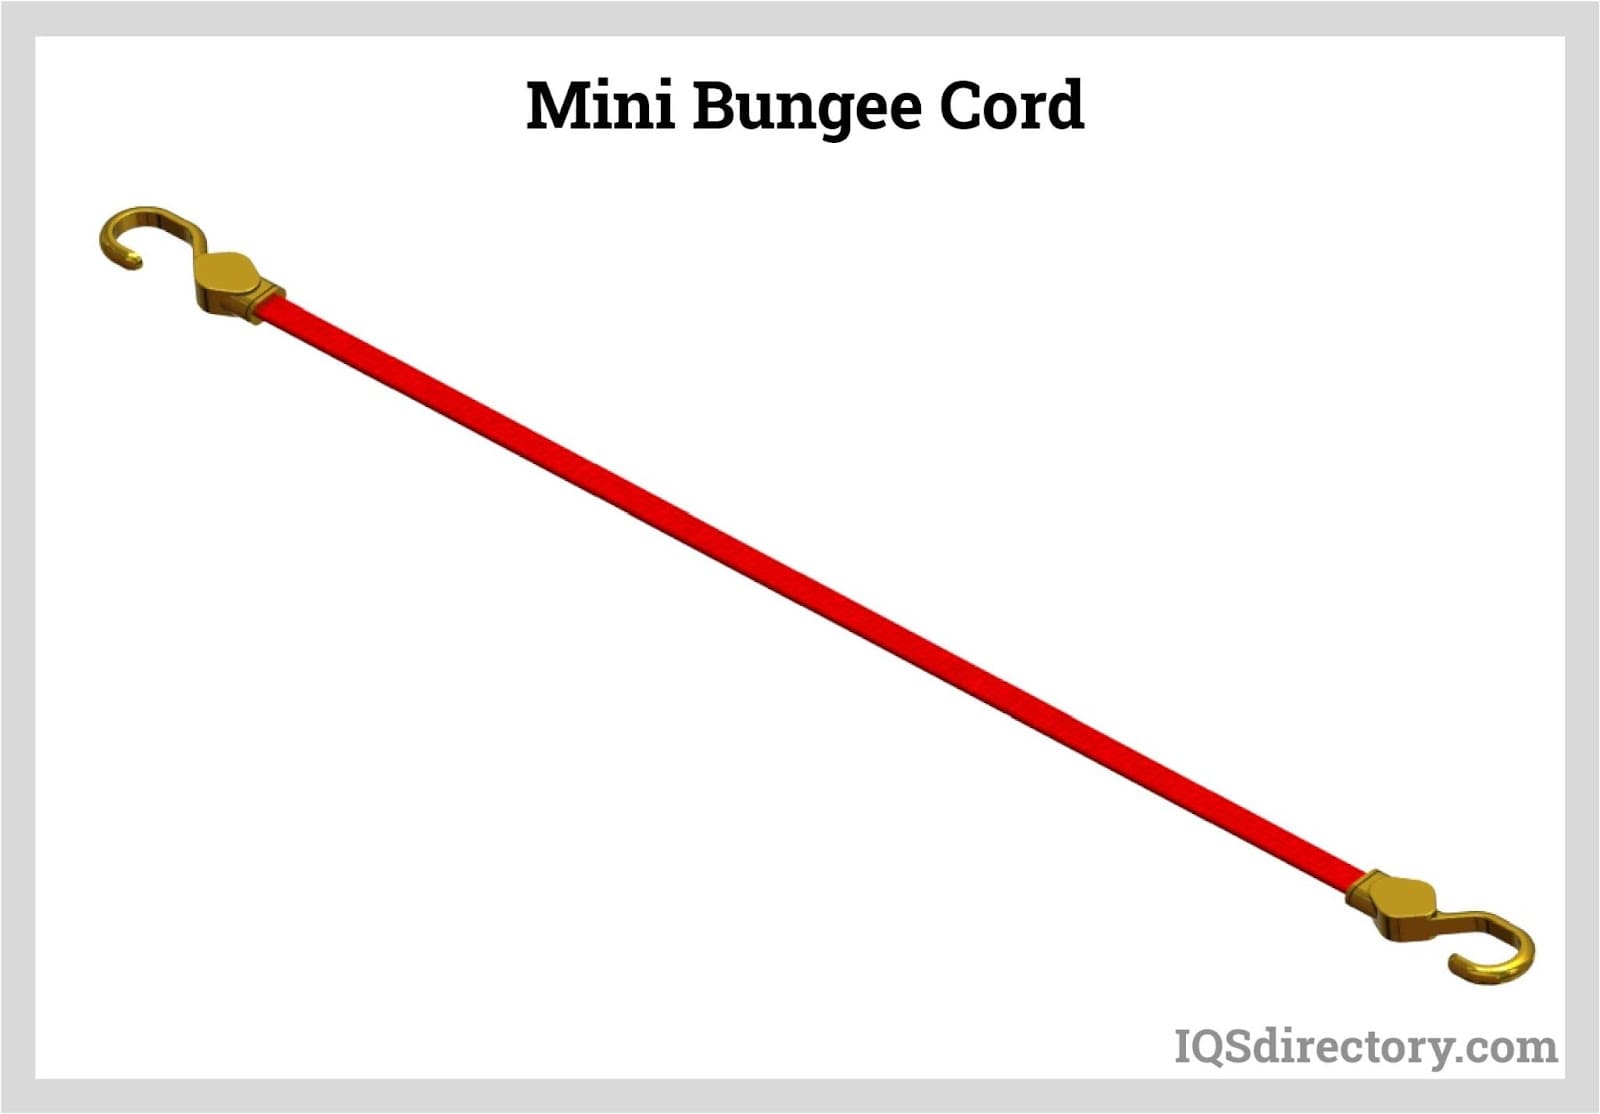 Mini Bungee Cord